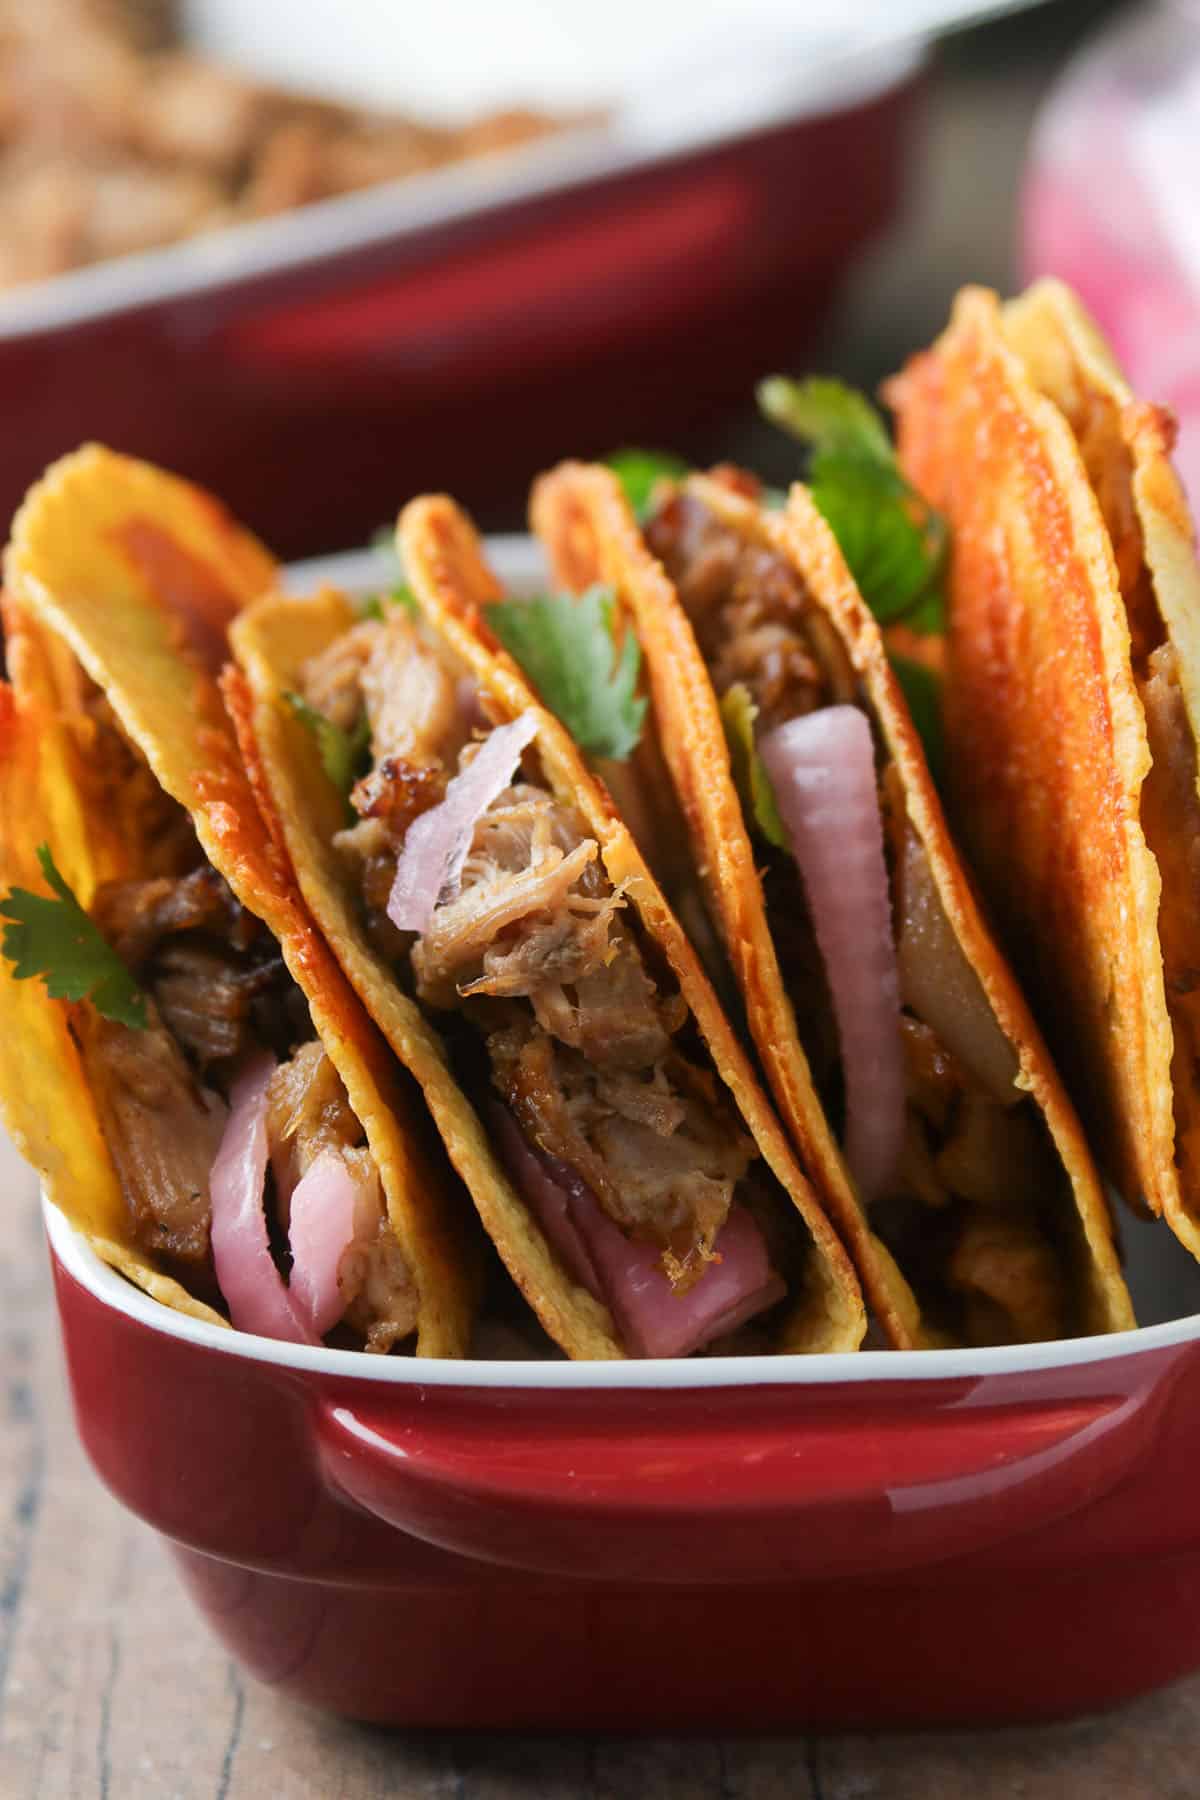 The crispy pork carnitas tacos up close.